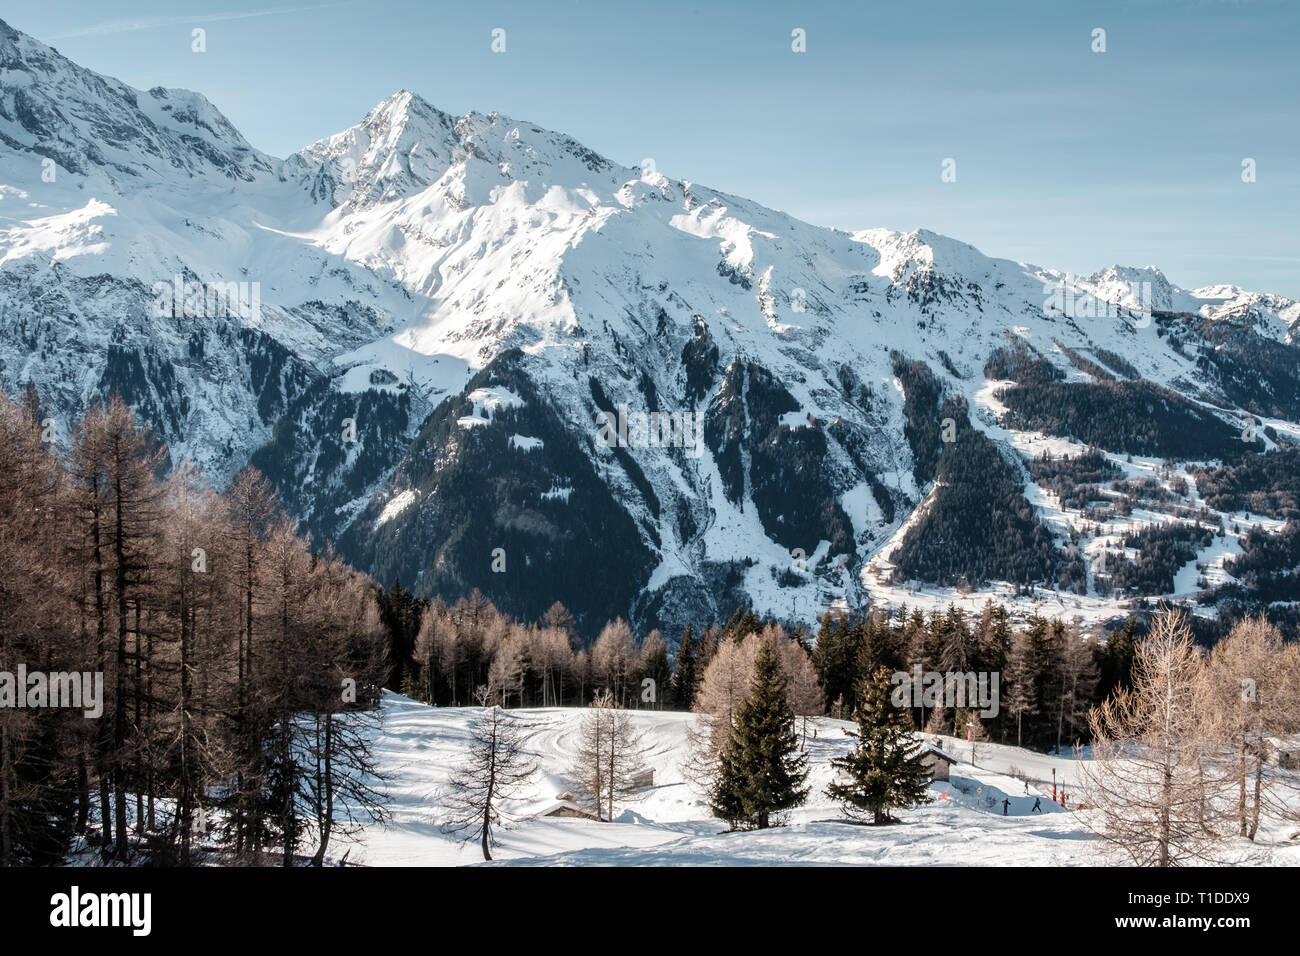 Una vista de las montañas de los Alpes franceses. Es invierno y las montañas tienen nieve sobre ellas Foto de stock